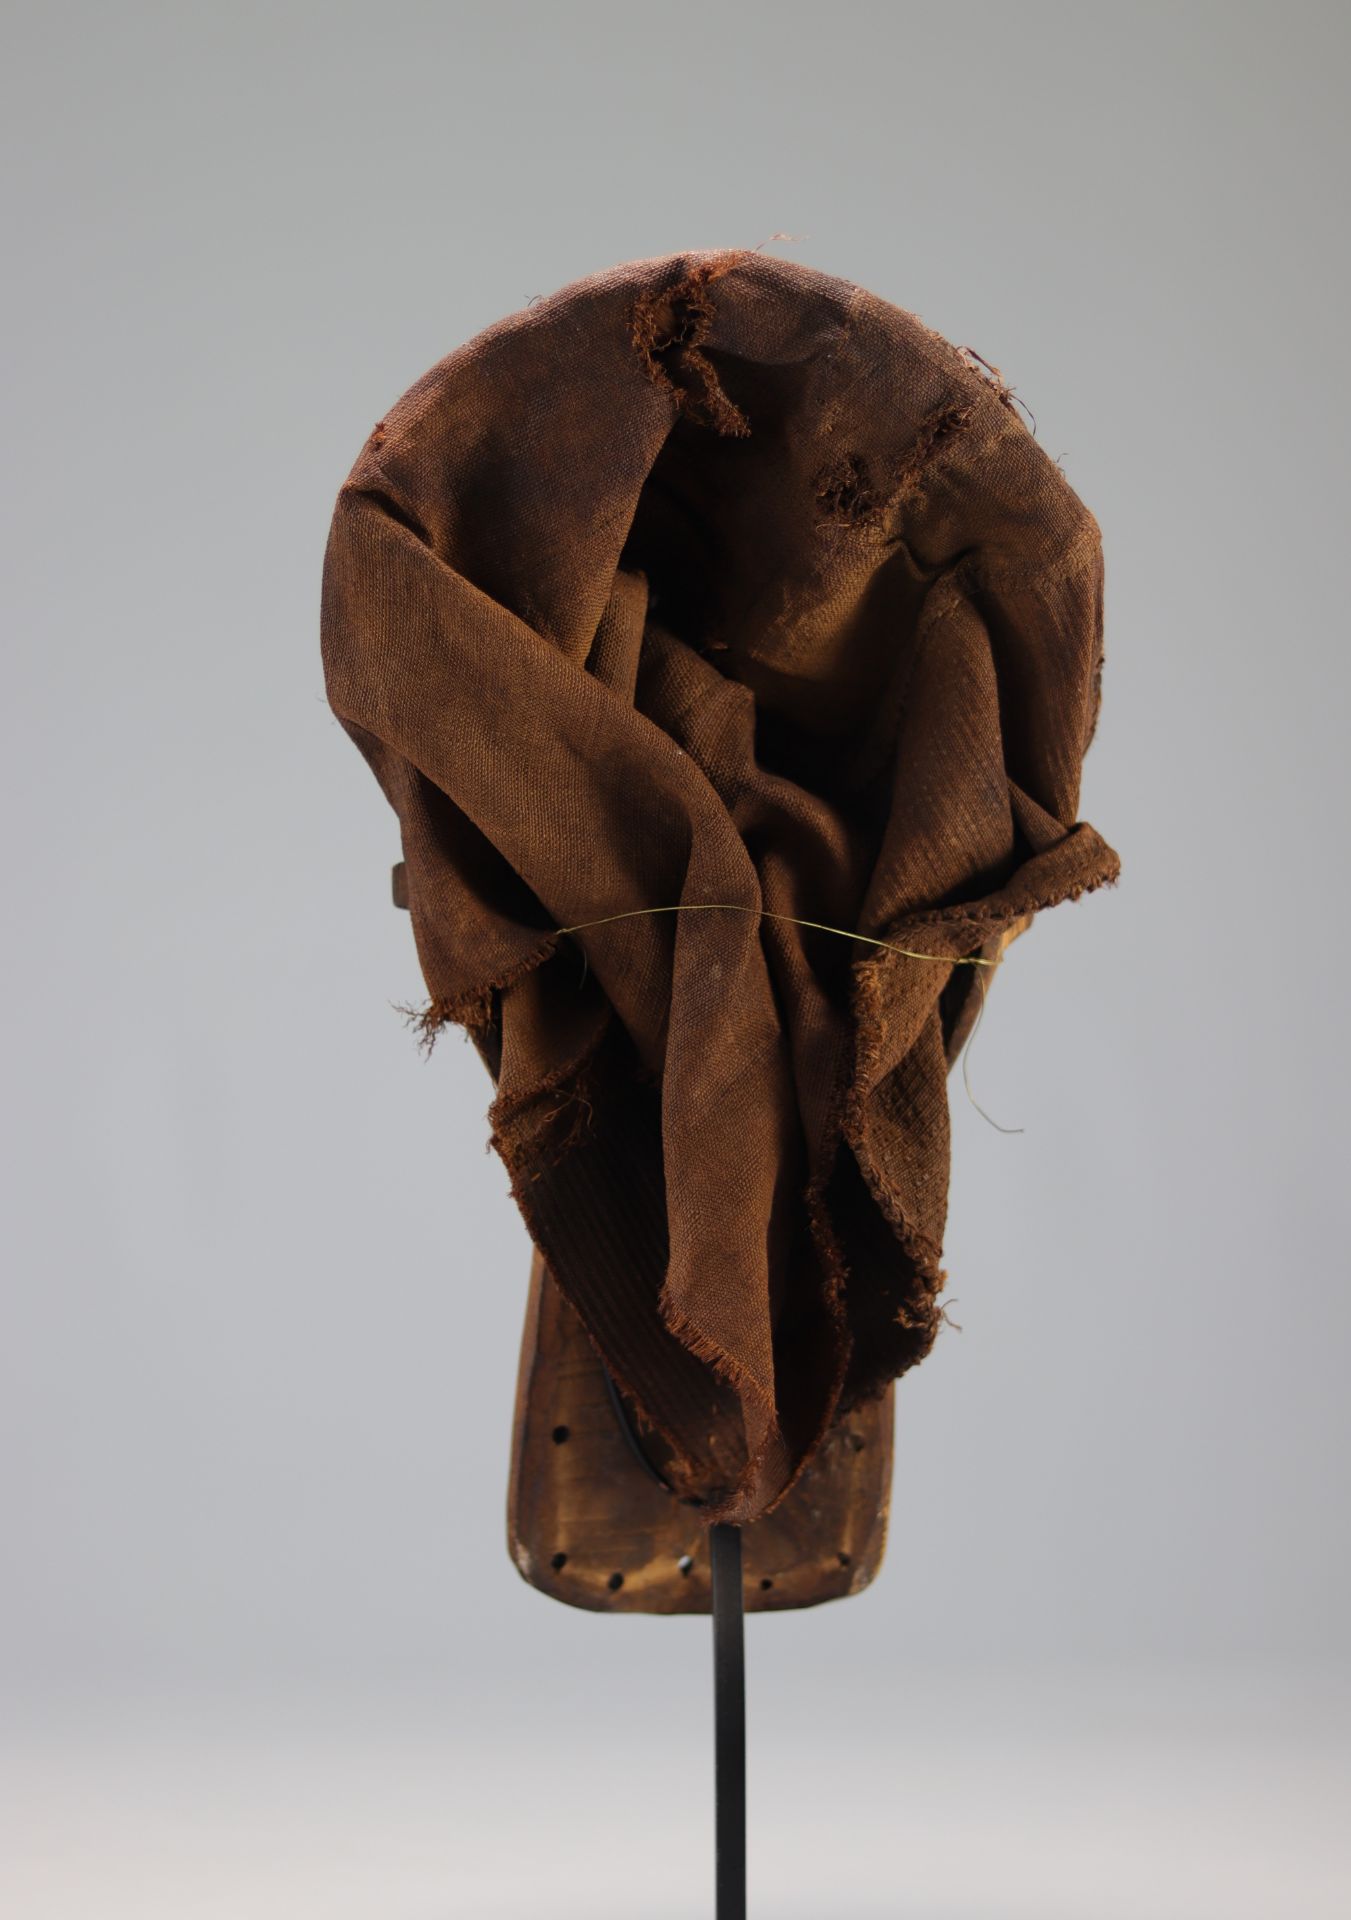 Carved wooden Pende mask - Image 5 of 5